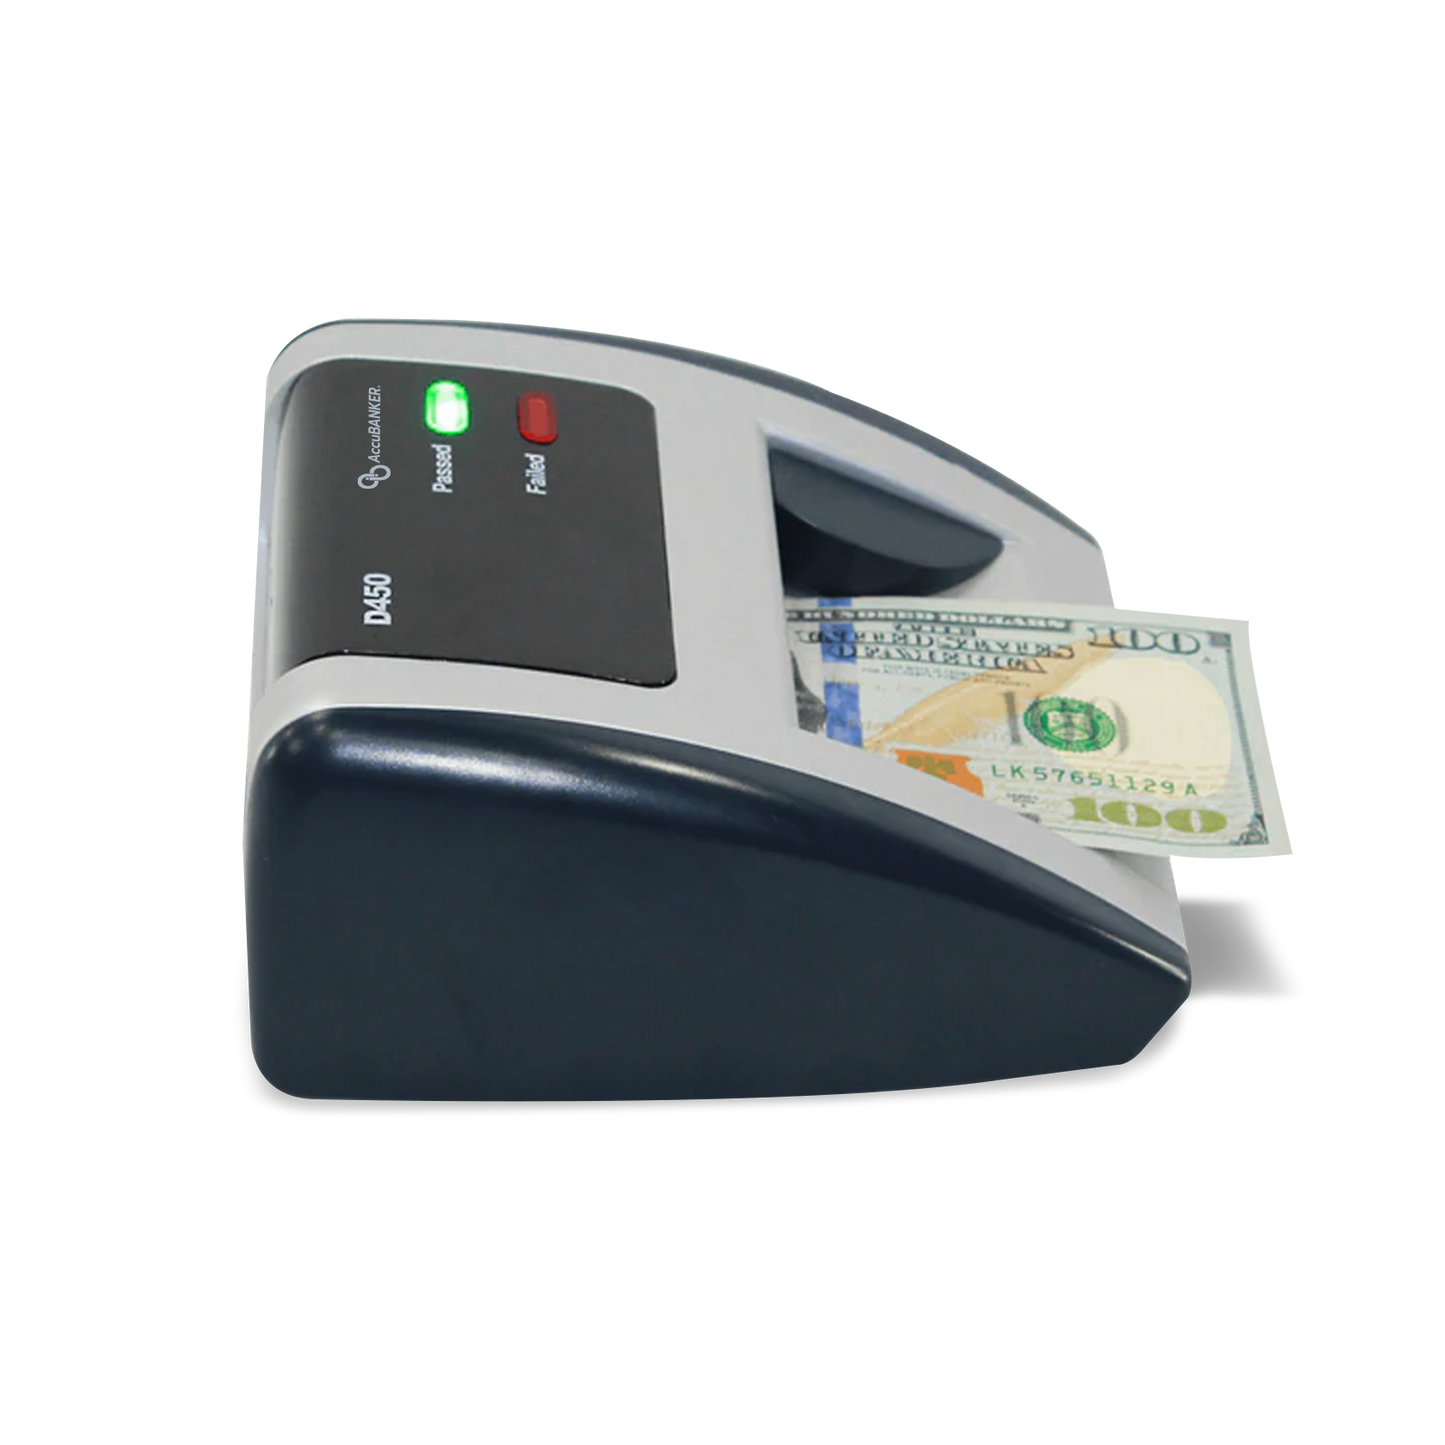 Detector Billetes Falsos Approx Led (APPBILLDETECTOR) - Innova Informática  : Detectores de billetes falsos